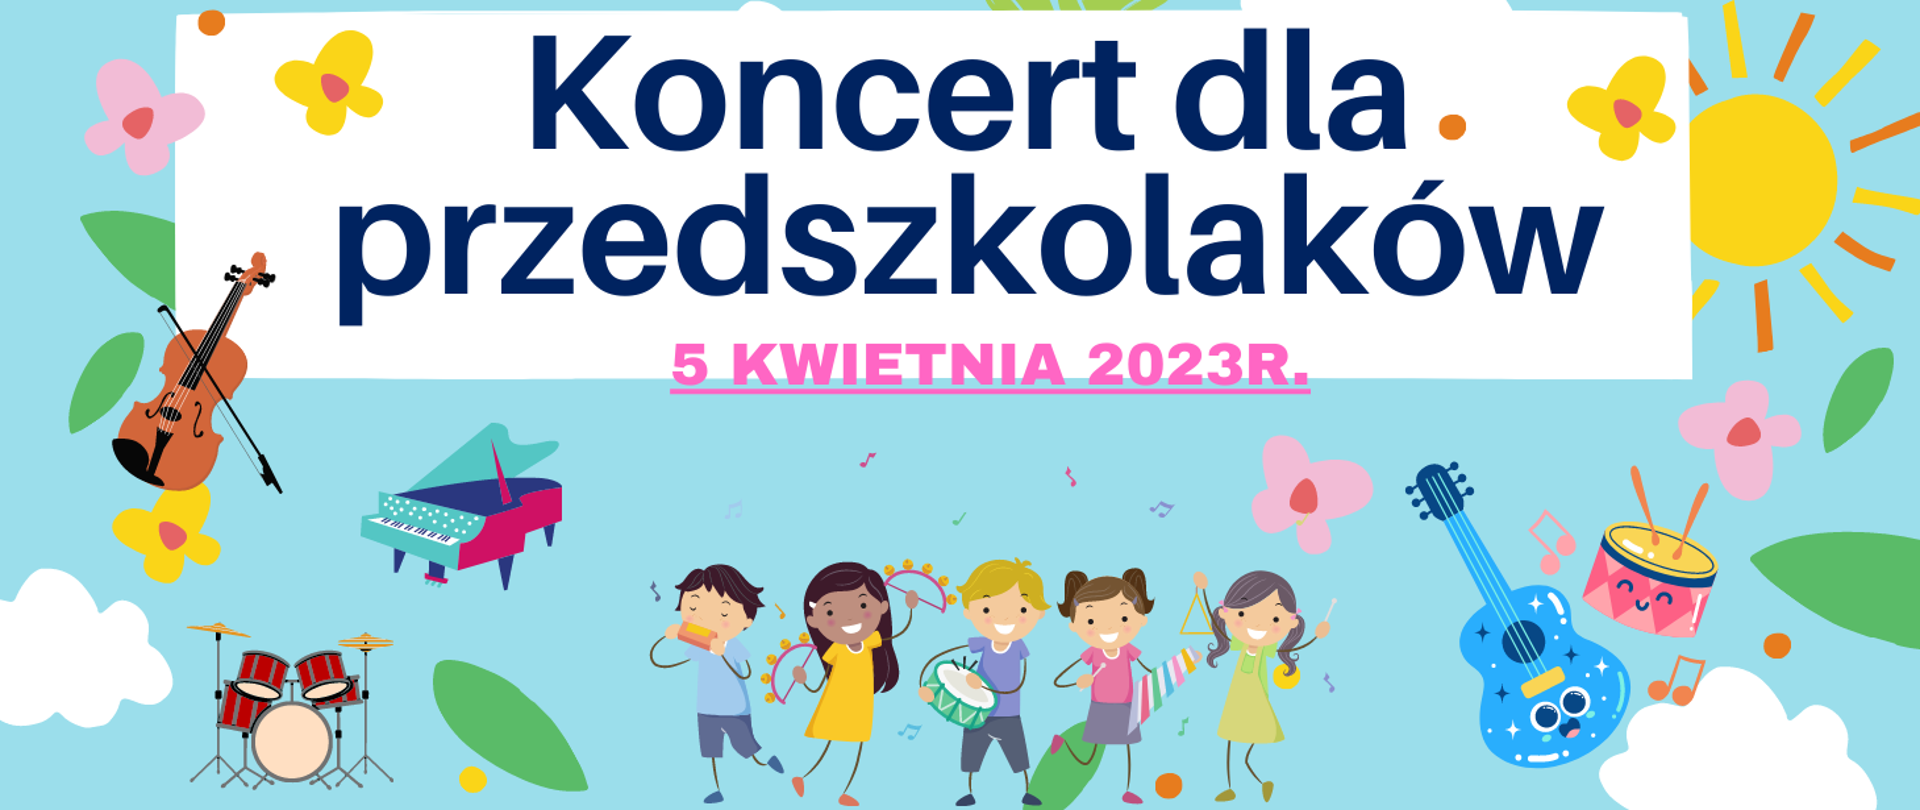 Kolorowy baner informujący o koncercie dla przedszkolaków w dniu 5 kwietnia 2023r. Niebieskie tło na którym znajdują się kolorowe instrumenty, na dole kolorowe postacie dzieci grających na instrumentach, kolorowe kwiatki, słoneczko, chmurki.